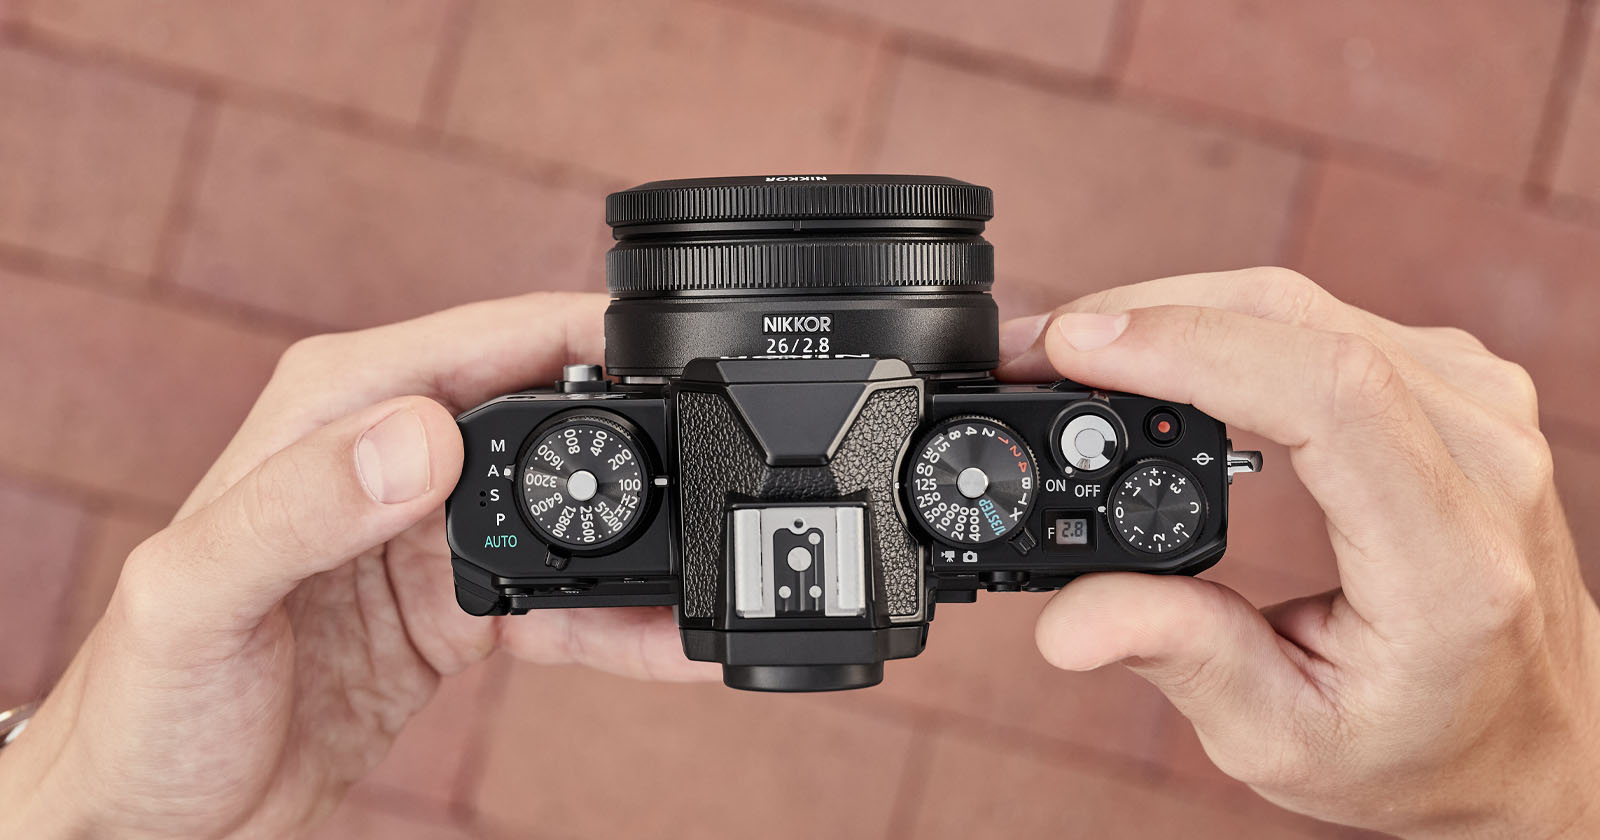 Nikon ra mắt ống kính Nikkor Z 26mm F2.8 với kích thước nhỏ và trọng lượng siêu nhẹ